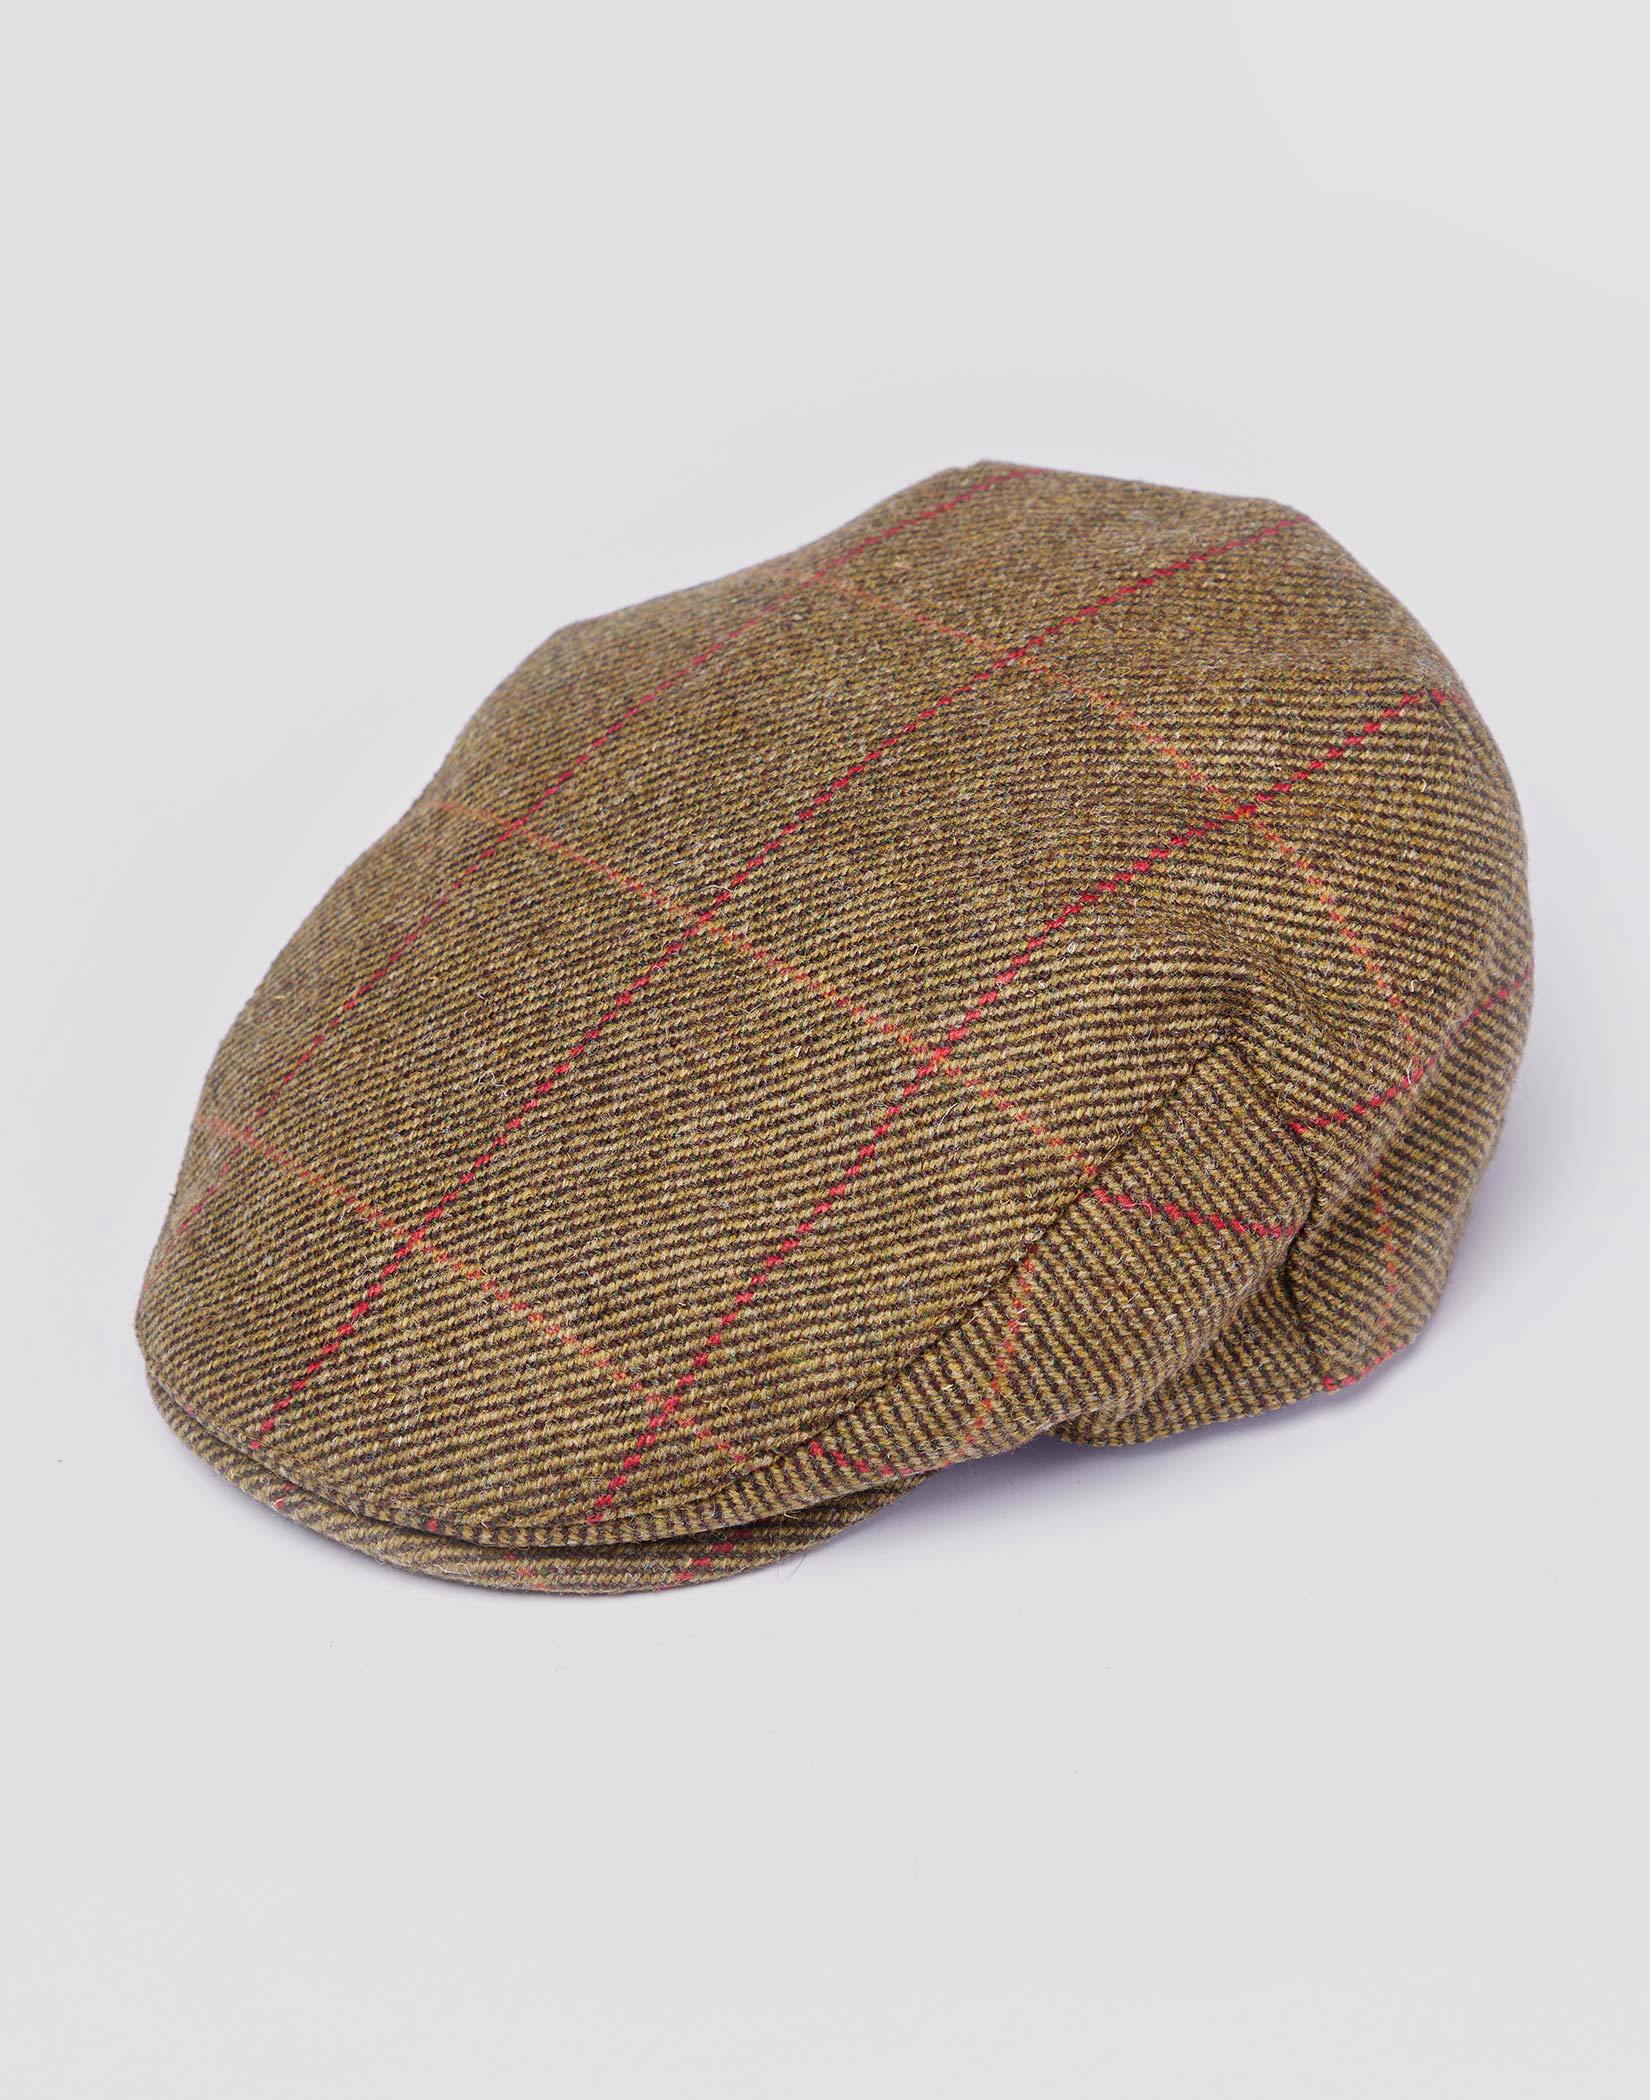 British Tweed Flat Cap - Olive/Red (Waterproof)